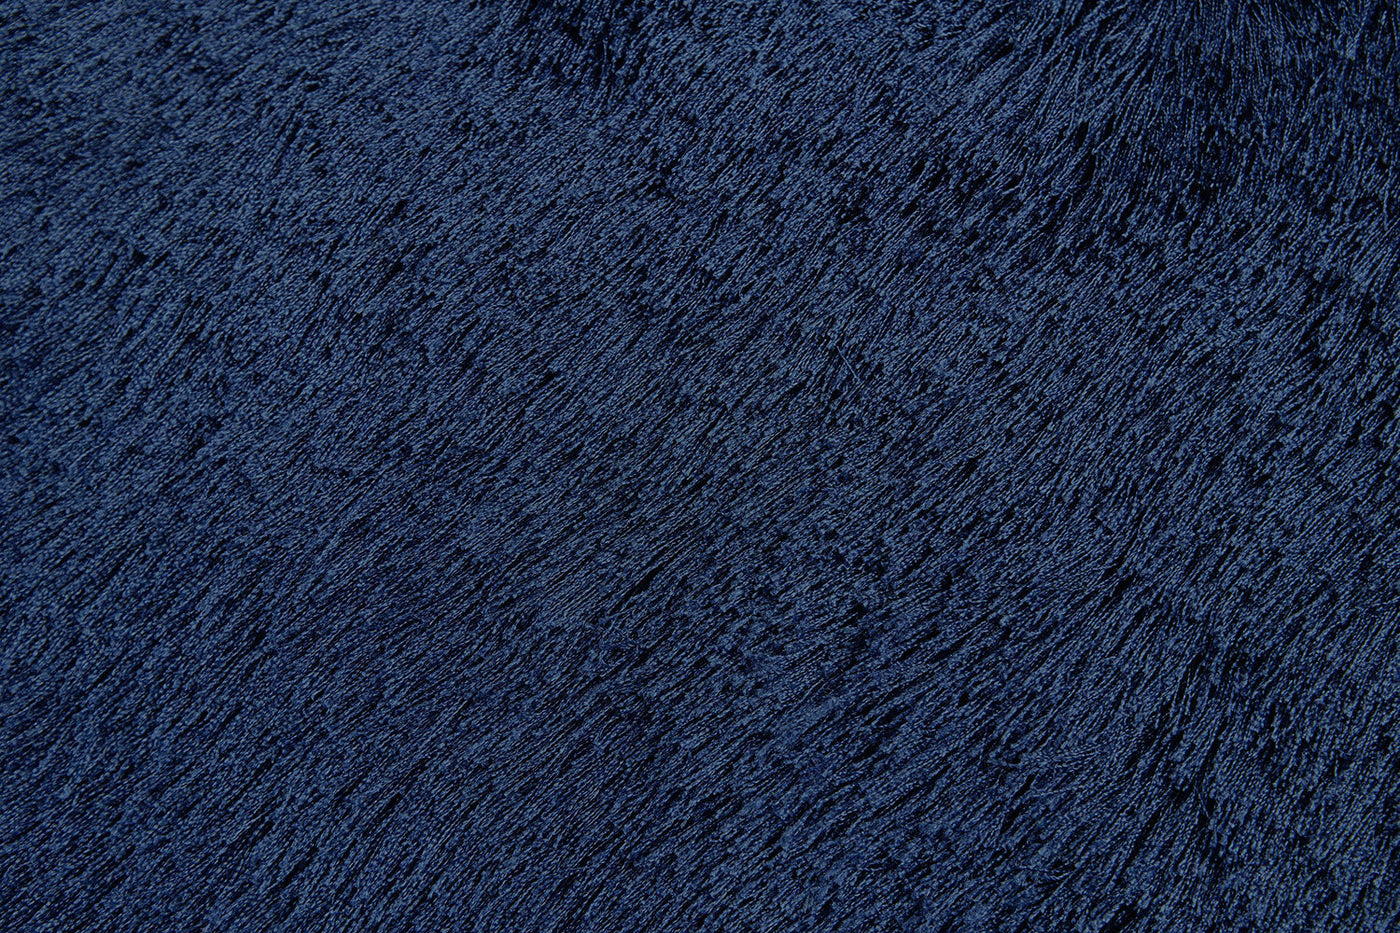 Indochine Dark Blue 4'9" X 7'6" Area Rug